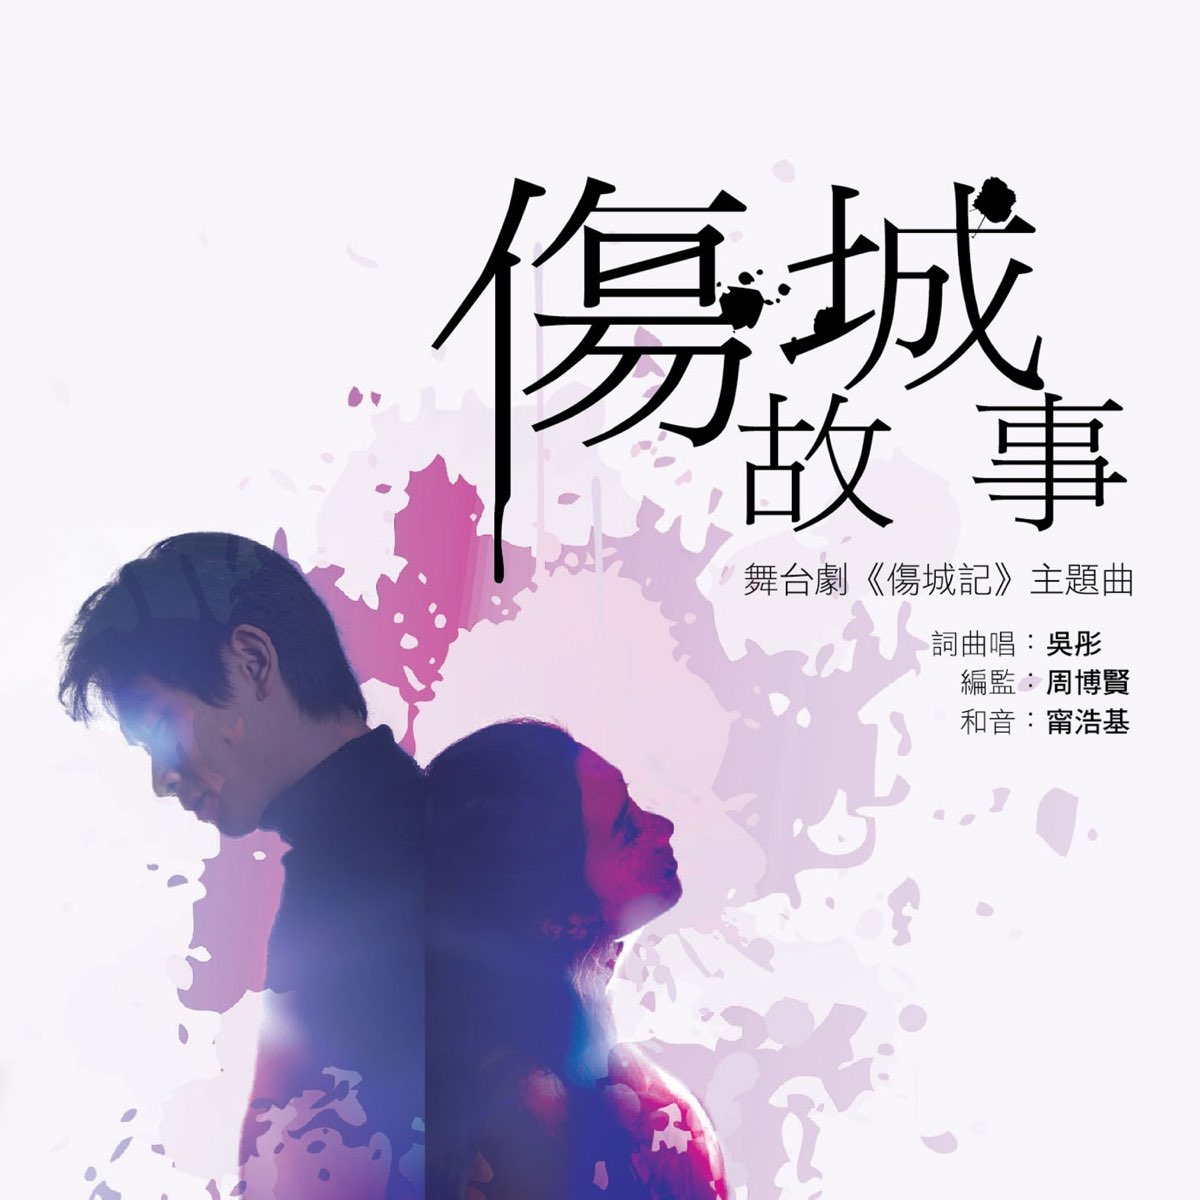 ‎傷城故事 (舞台劇《傷城記》主題曲) - Single - Album by Denis Ng - Apple Music